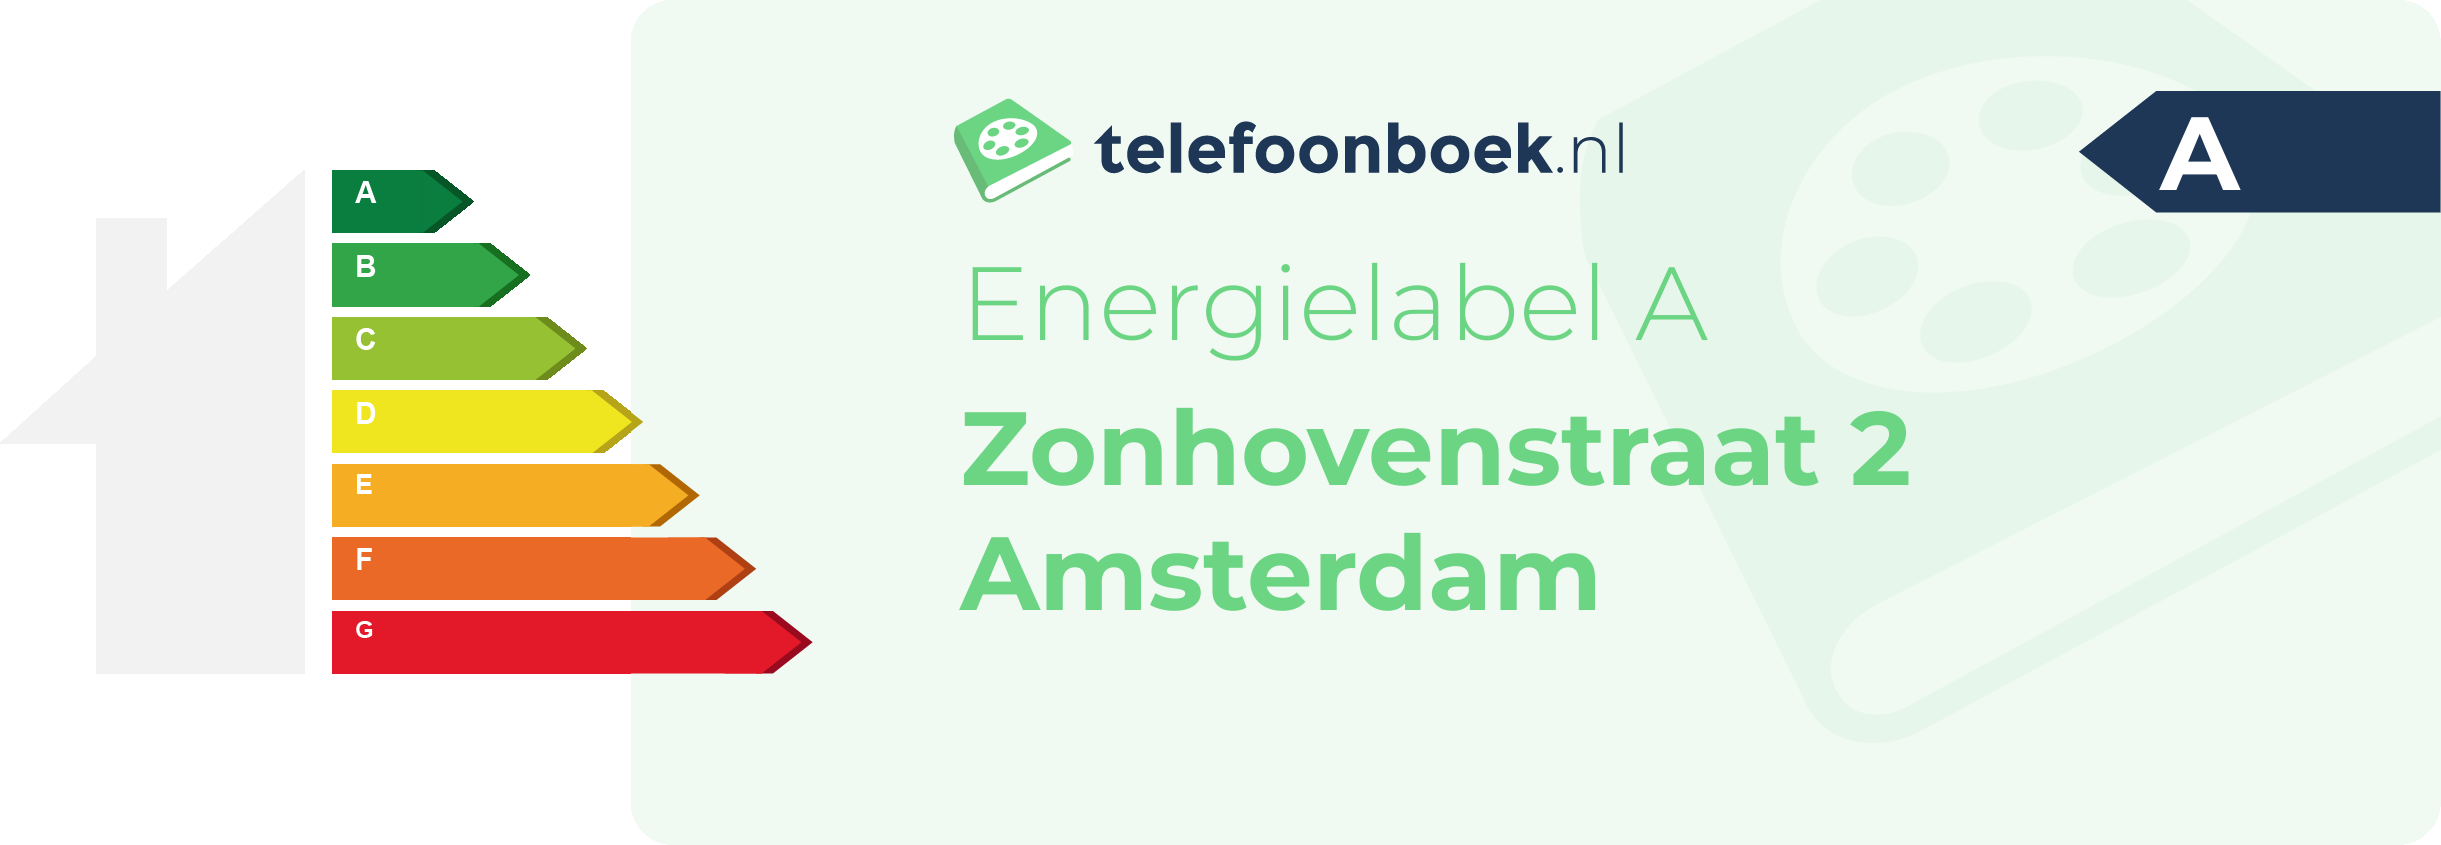 Energielabel Zonhovenstraat 2 Amsterdam